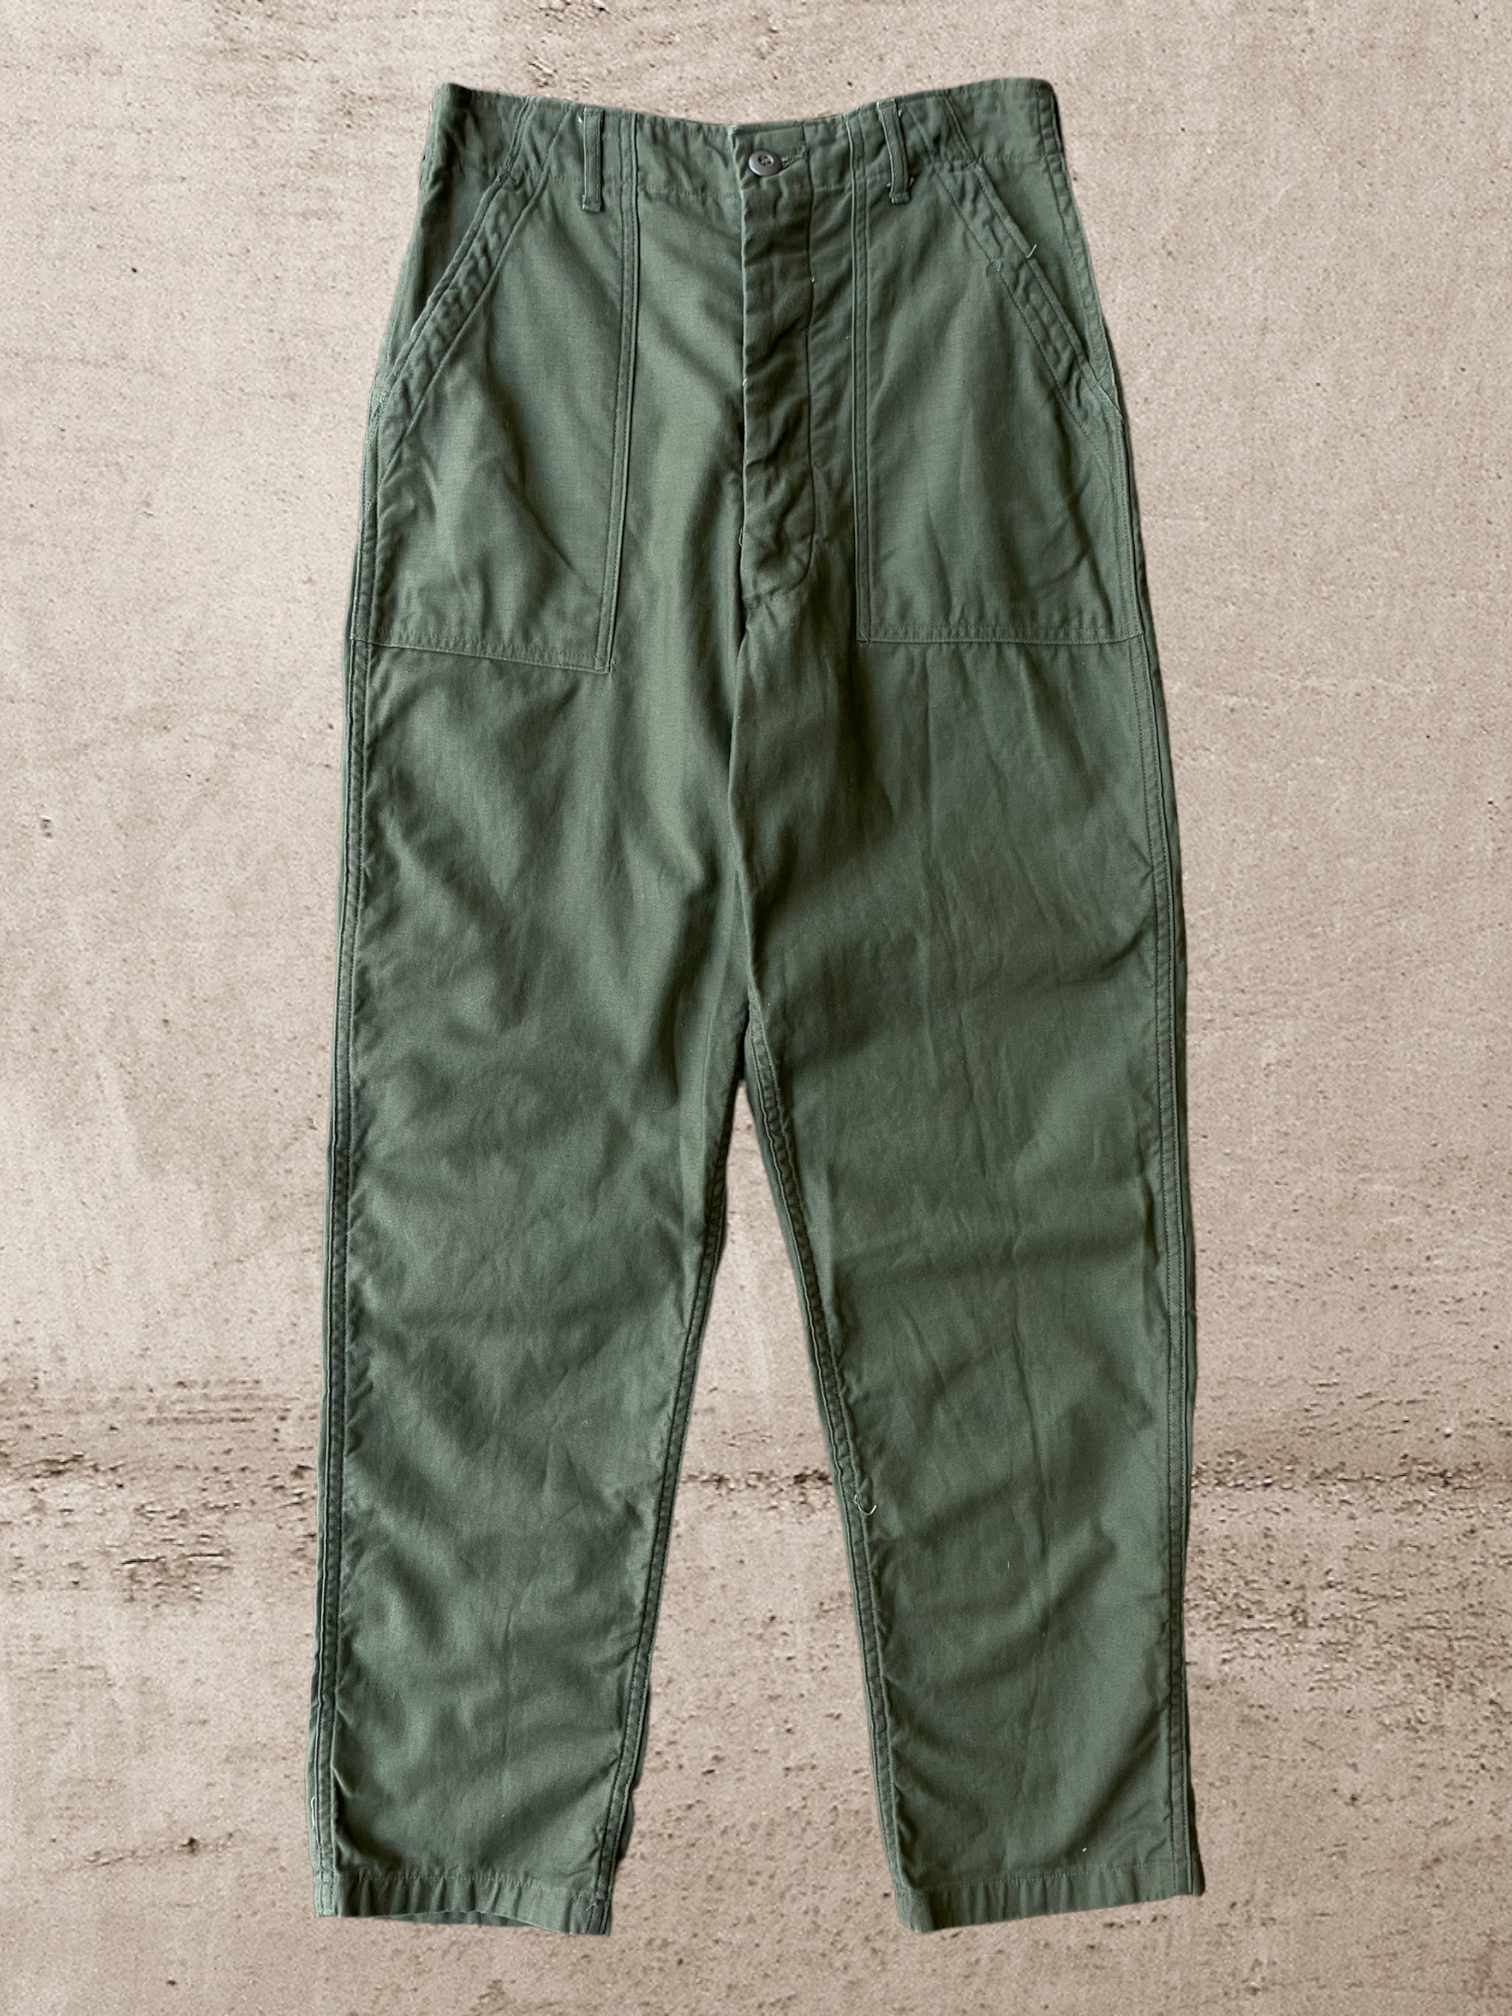 70s/80s Military OG 107 Fatigue Pants - 30x30